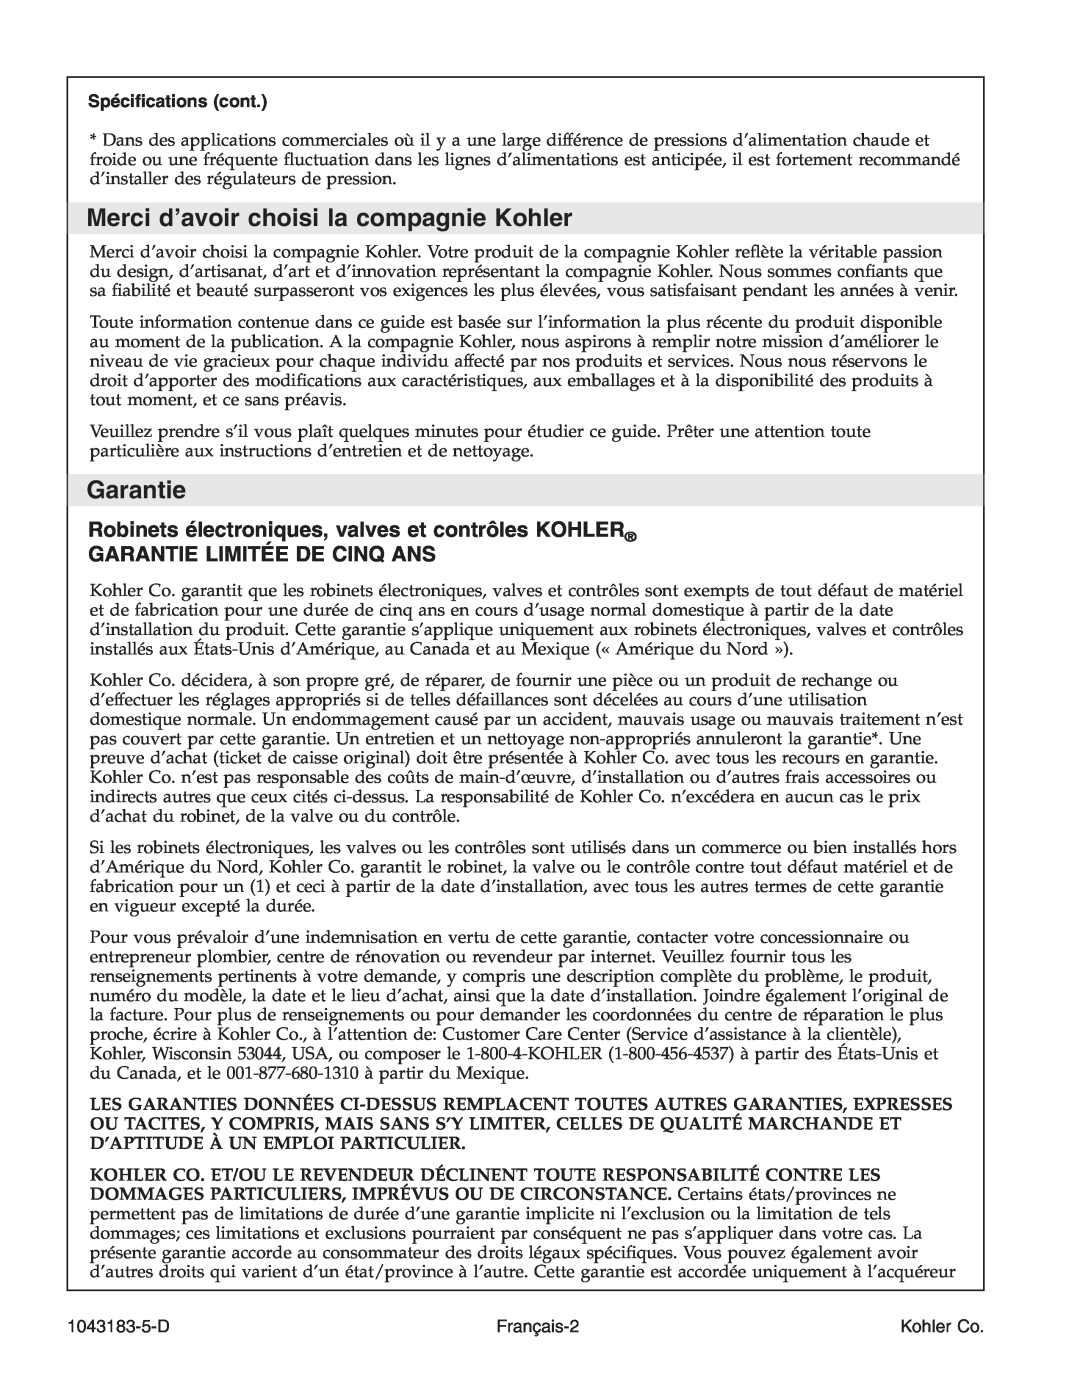 Kohler 1043183-5-D manual Merci d’avoir choisi la compagnie Kohler, Garantie Limitée De Cinq Ans, Spéciﬁcations cont 